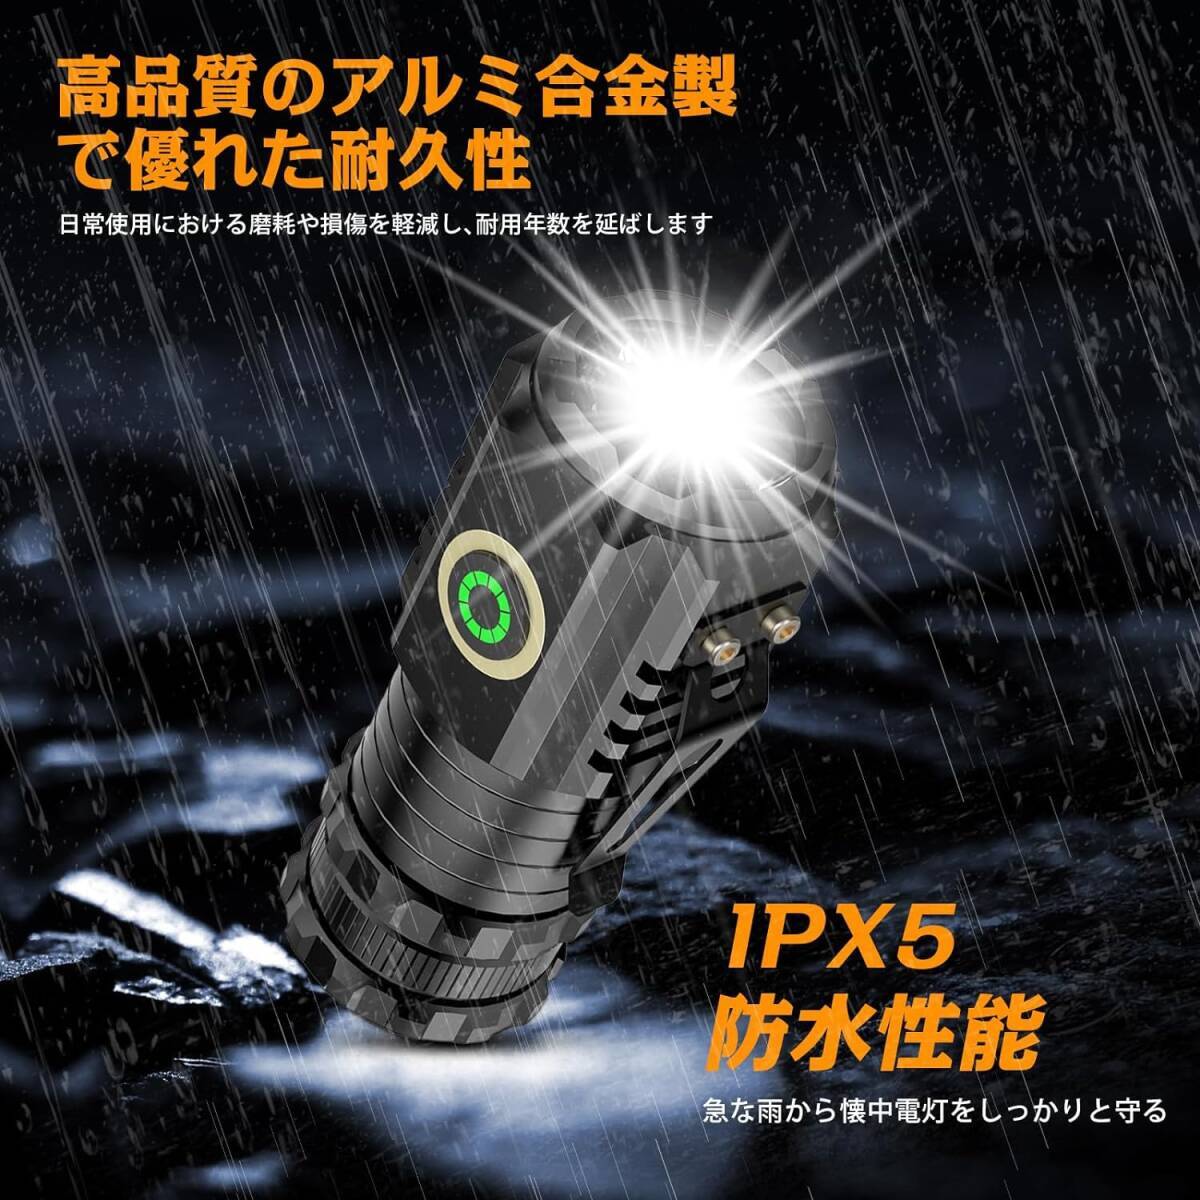 2個 T8LED 懐中電灯 超小型 軽量 強力LEDライト 1500mAh充電池 5つ照明モード ハンディライト IPX5防水 耐衝撃 ポケットクリップ付きの画像4